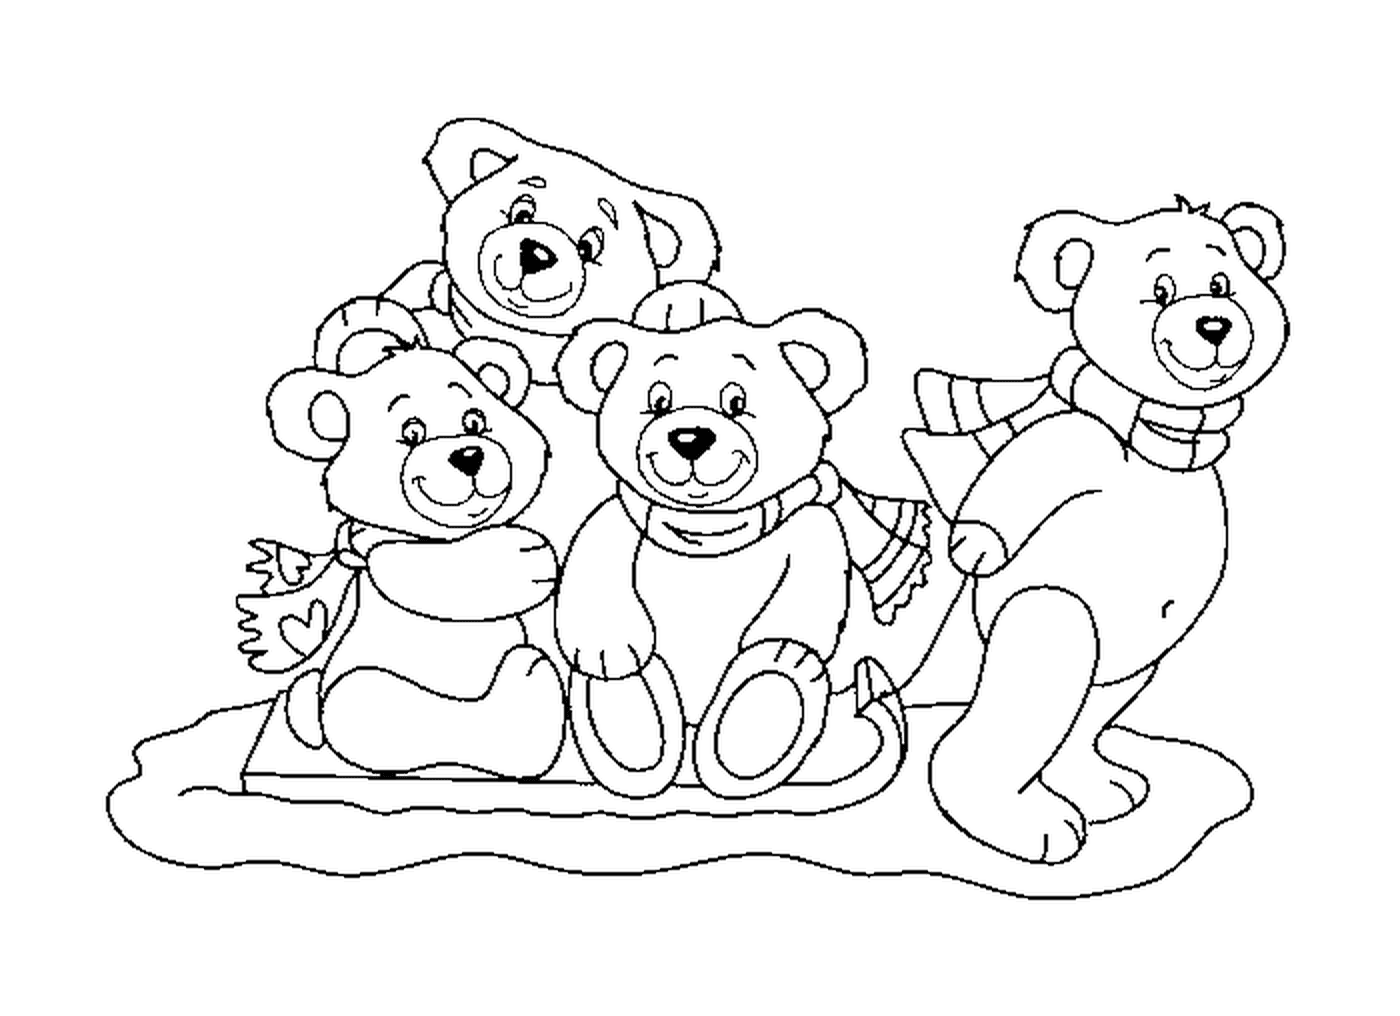  Familie Teddybär 